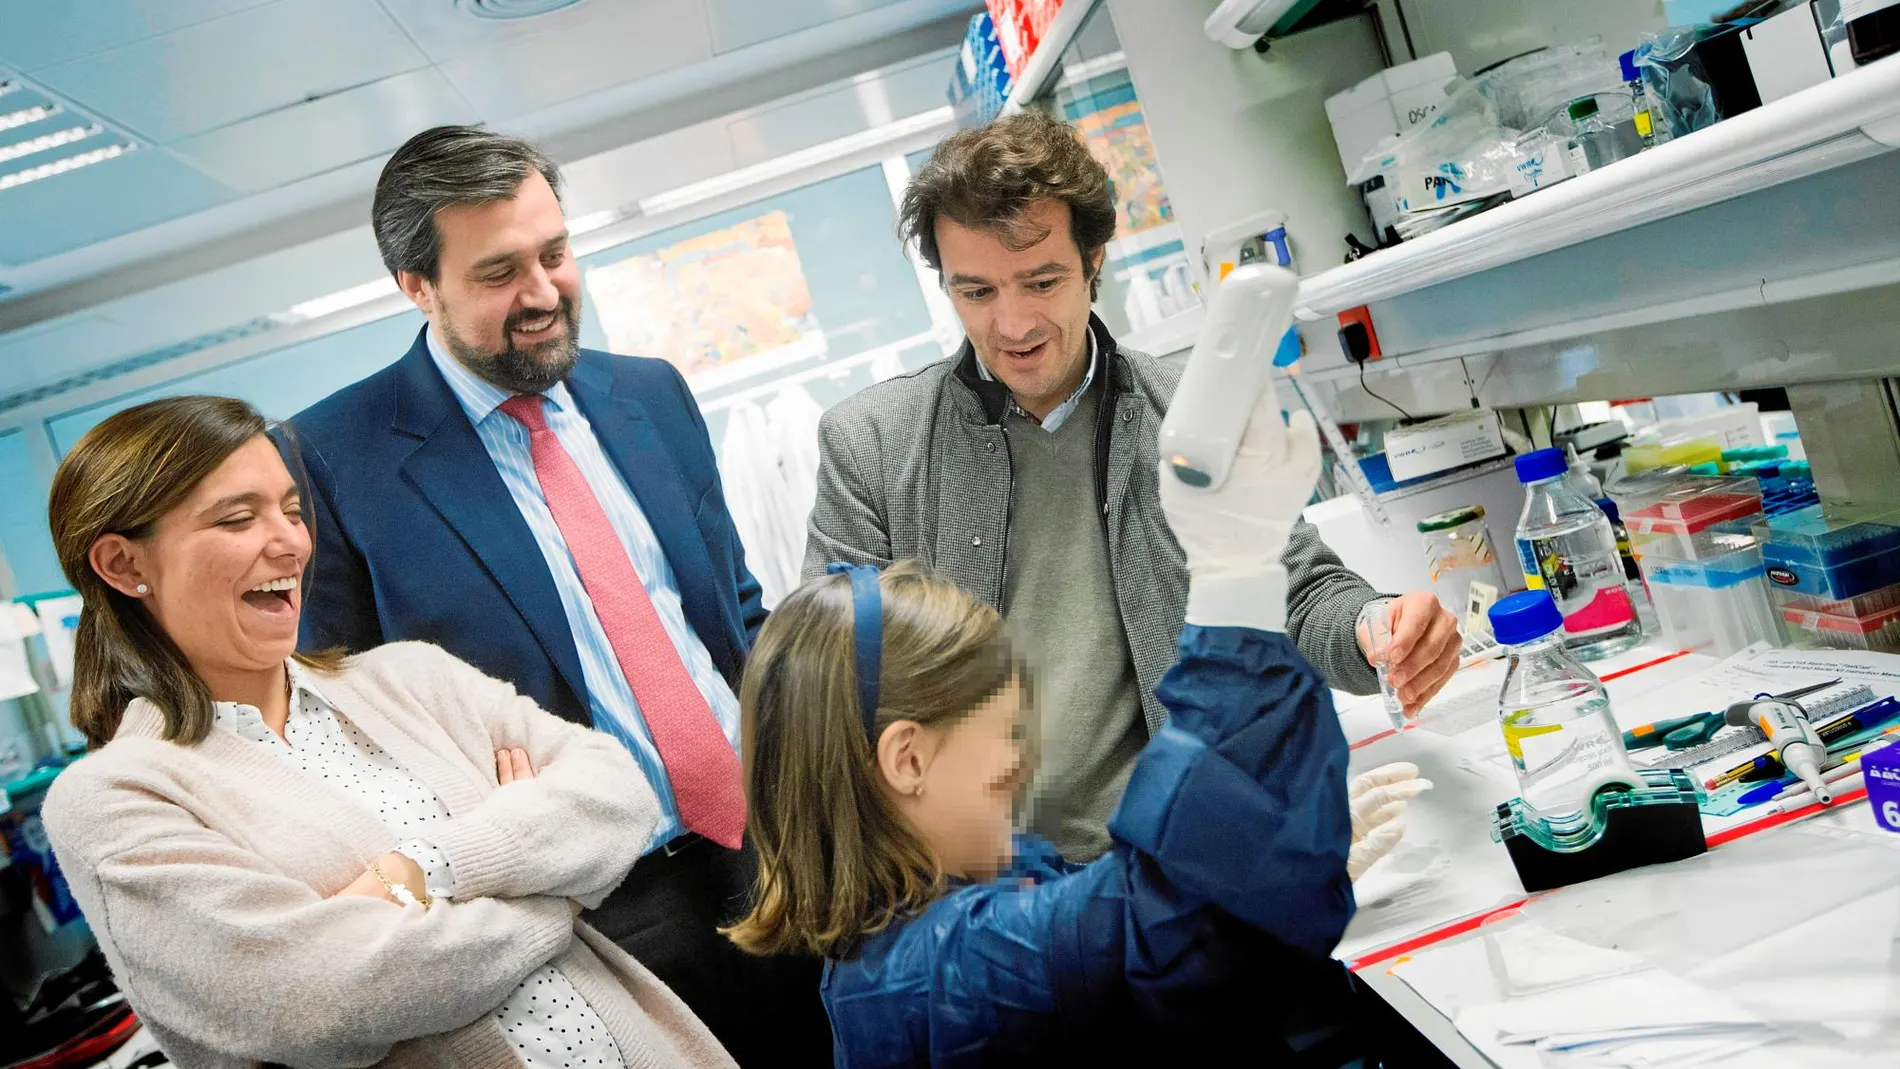 Inés y sus padres, María y Ricardo, visitan el laboratorio del Instituto Josep Carreras del equipo del doctor Pablo Menéndez